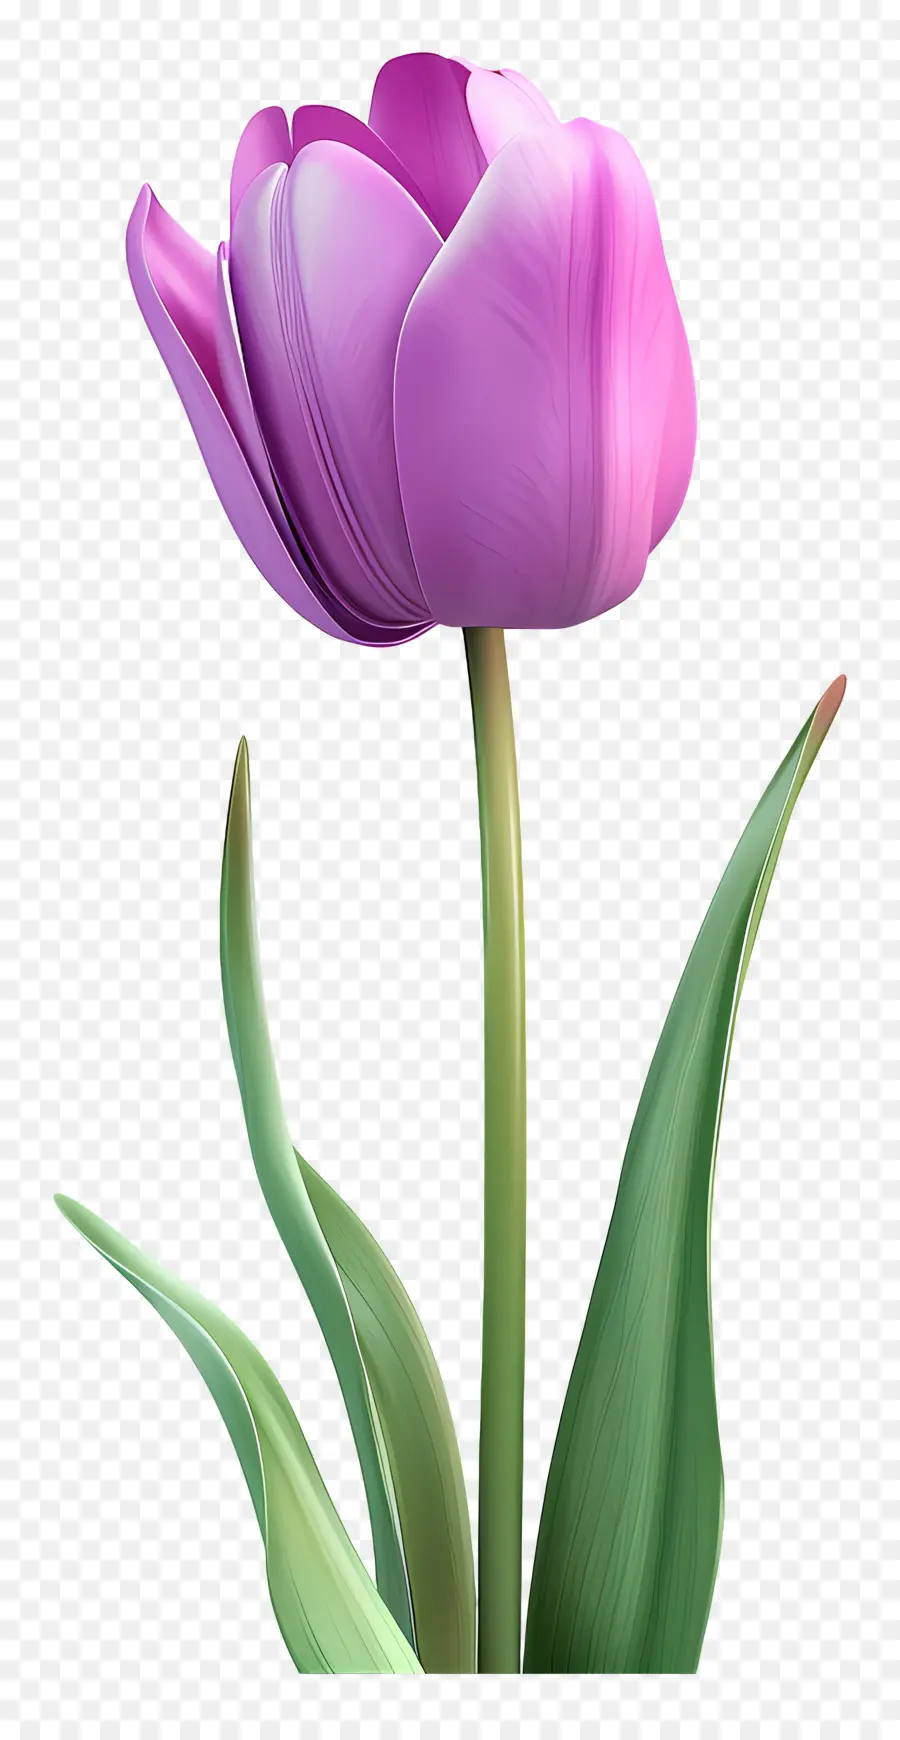 purple tulip purple tulip green leaves stem flower